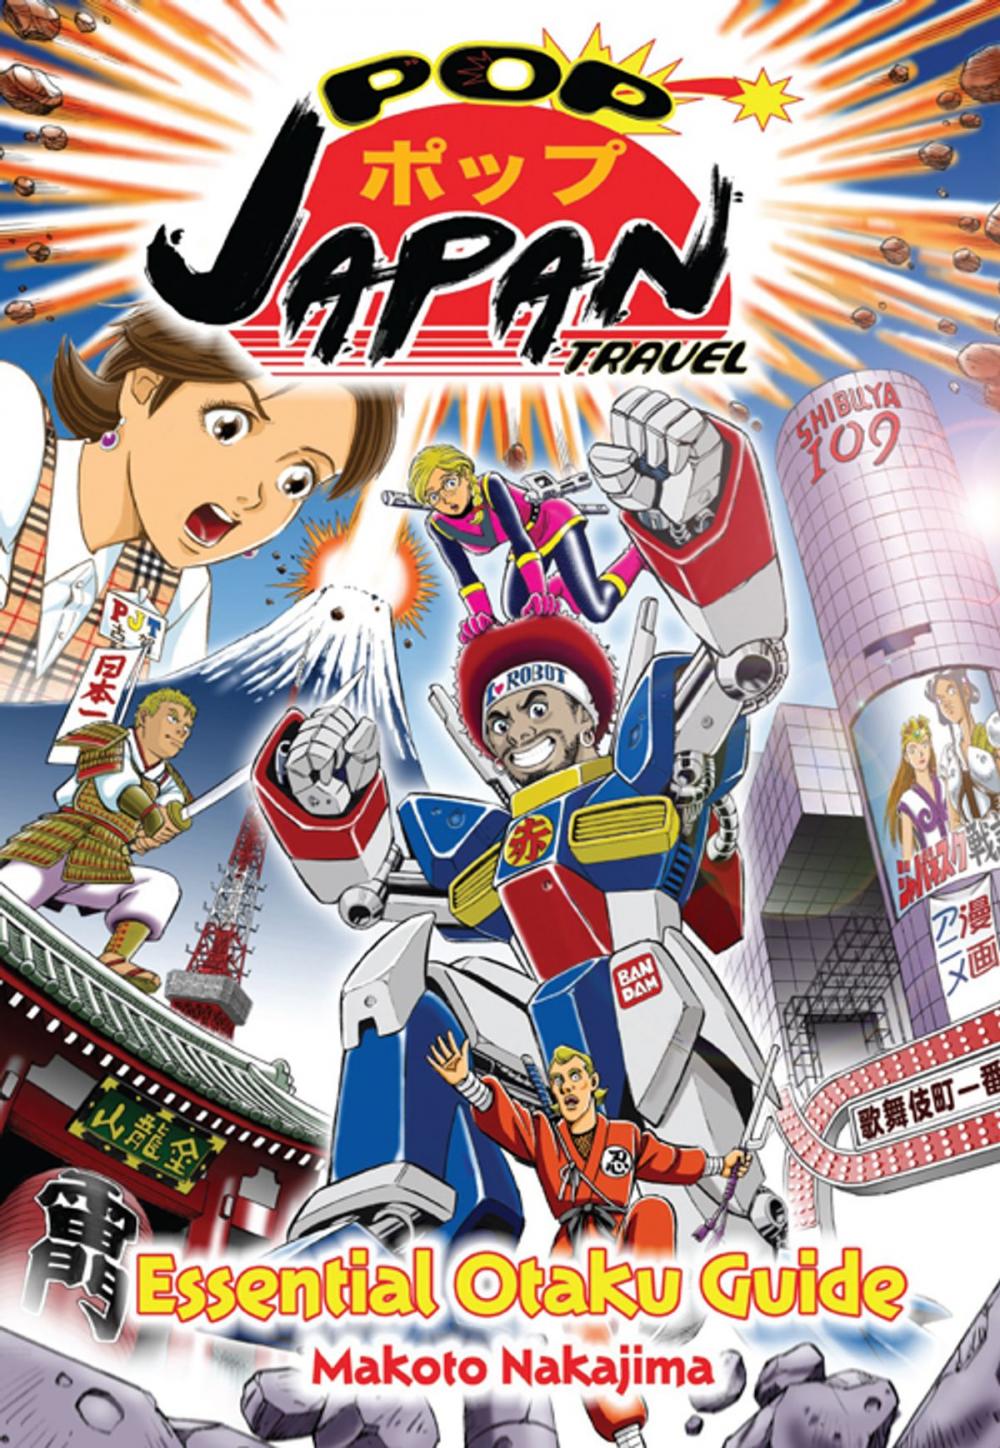 Big bigCover of Pop Japan Travel: Essential Otaku Guide (Manga)